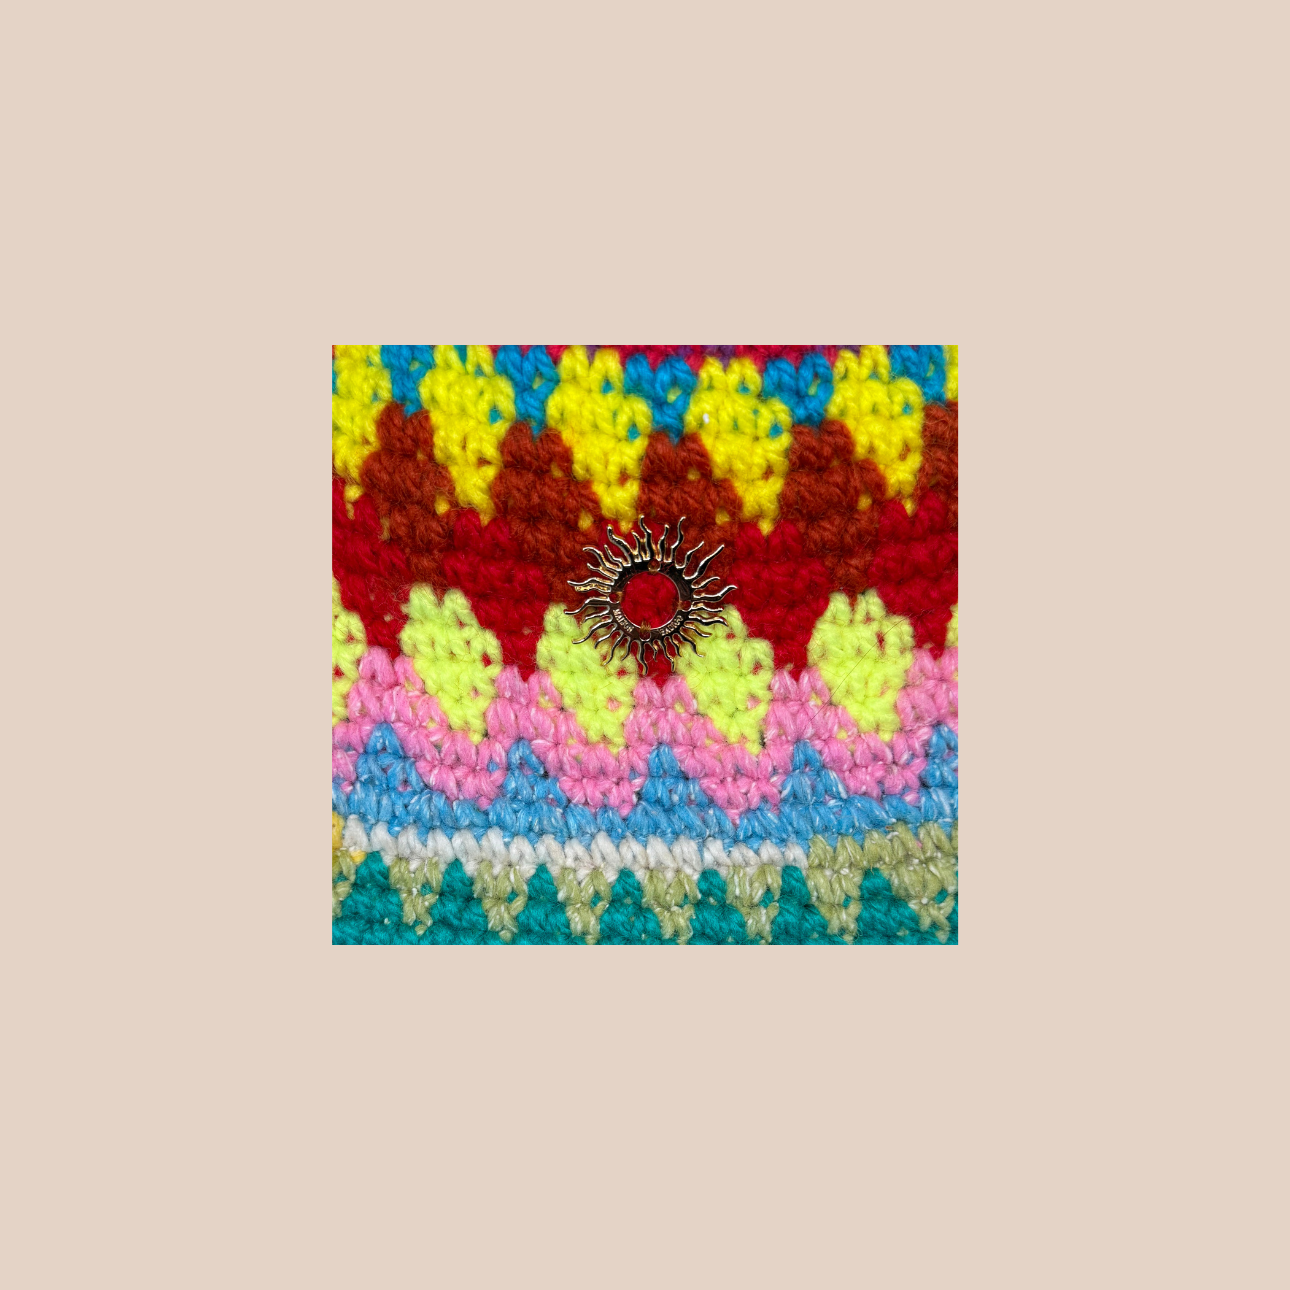 Image zoomée d'un bucket hat crocheté en laine et acrylique, arborant des couleurs vives et audacieuses, médaillon soleil cousue main